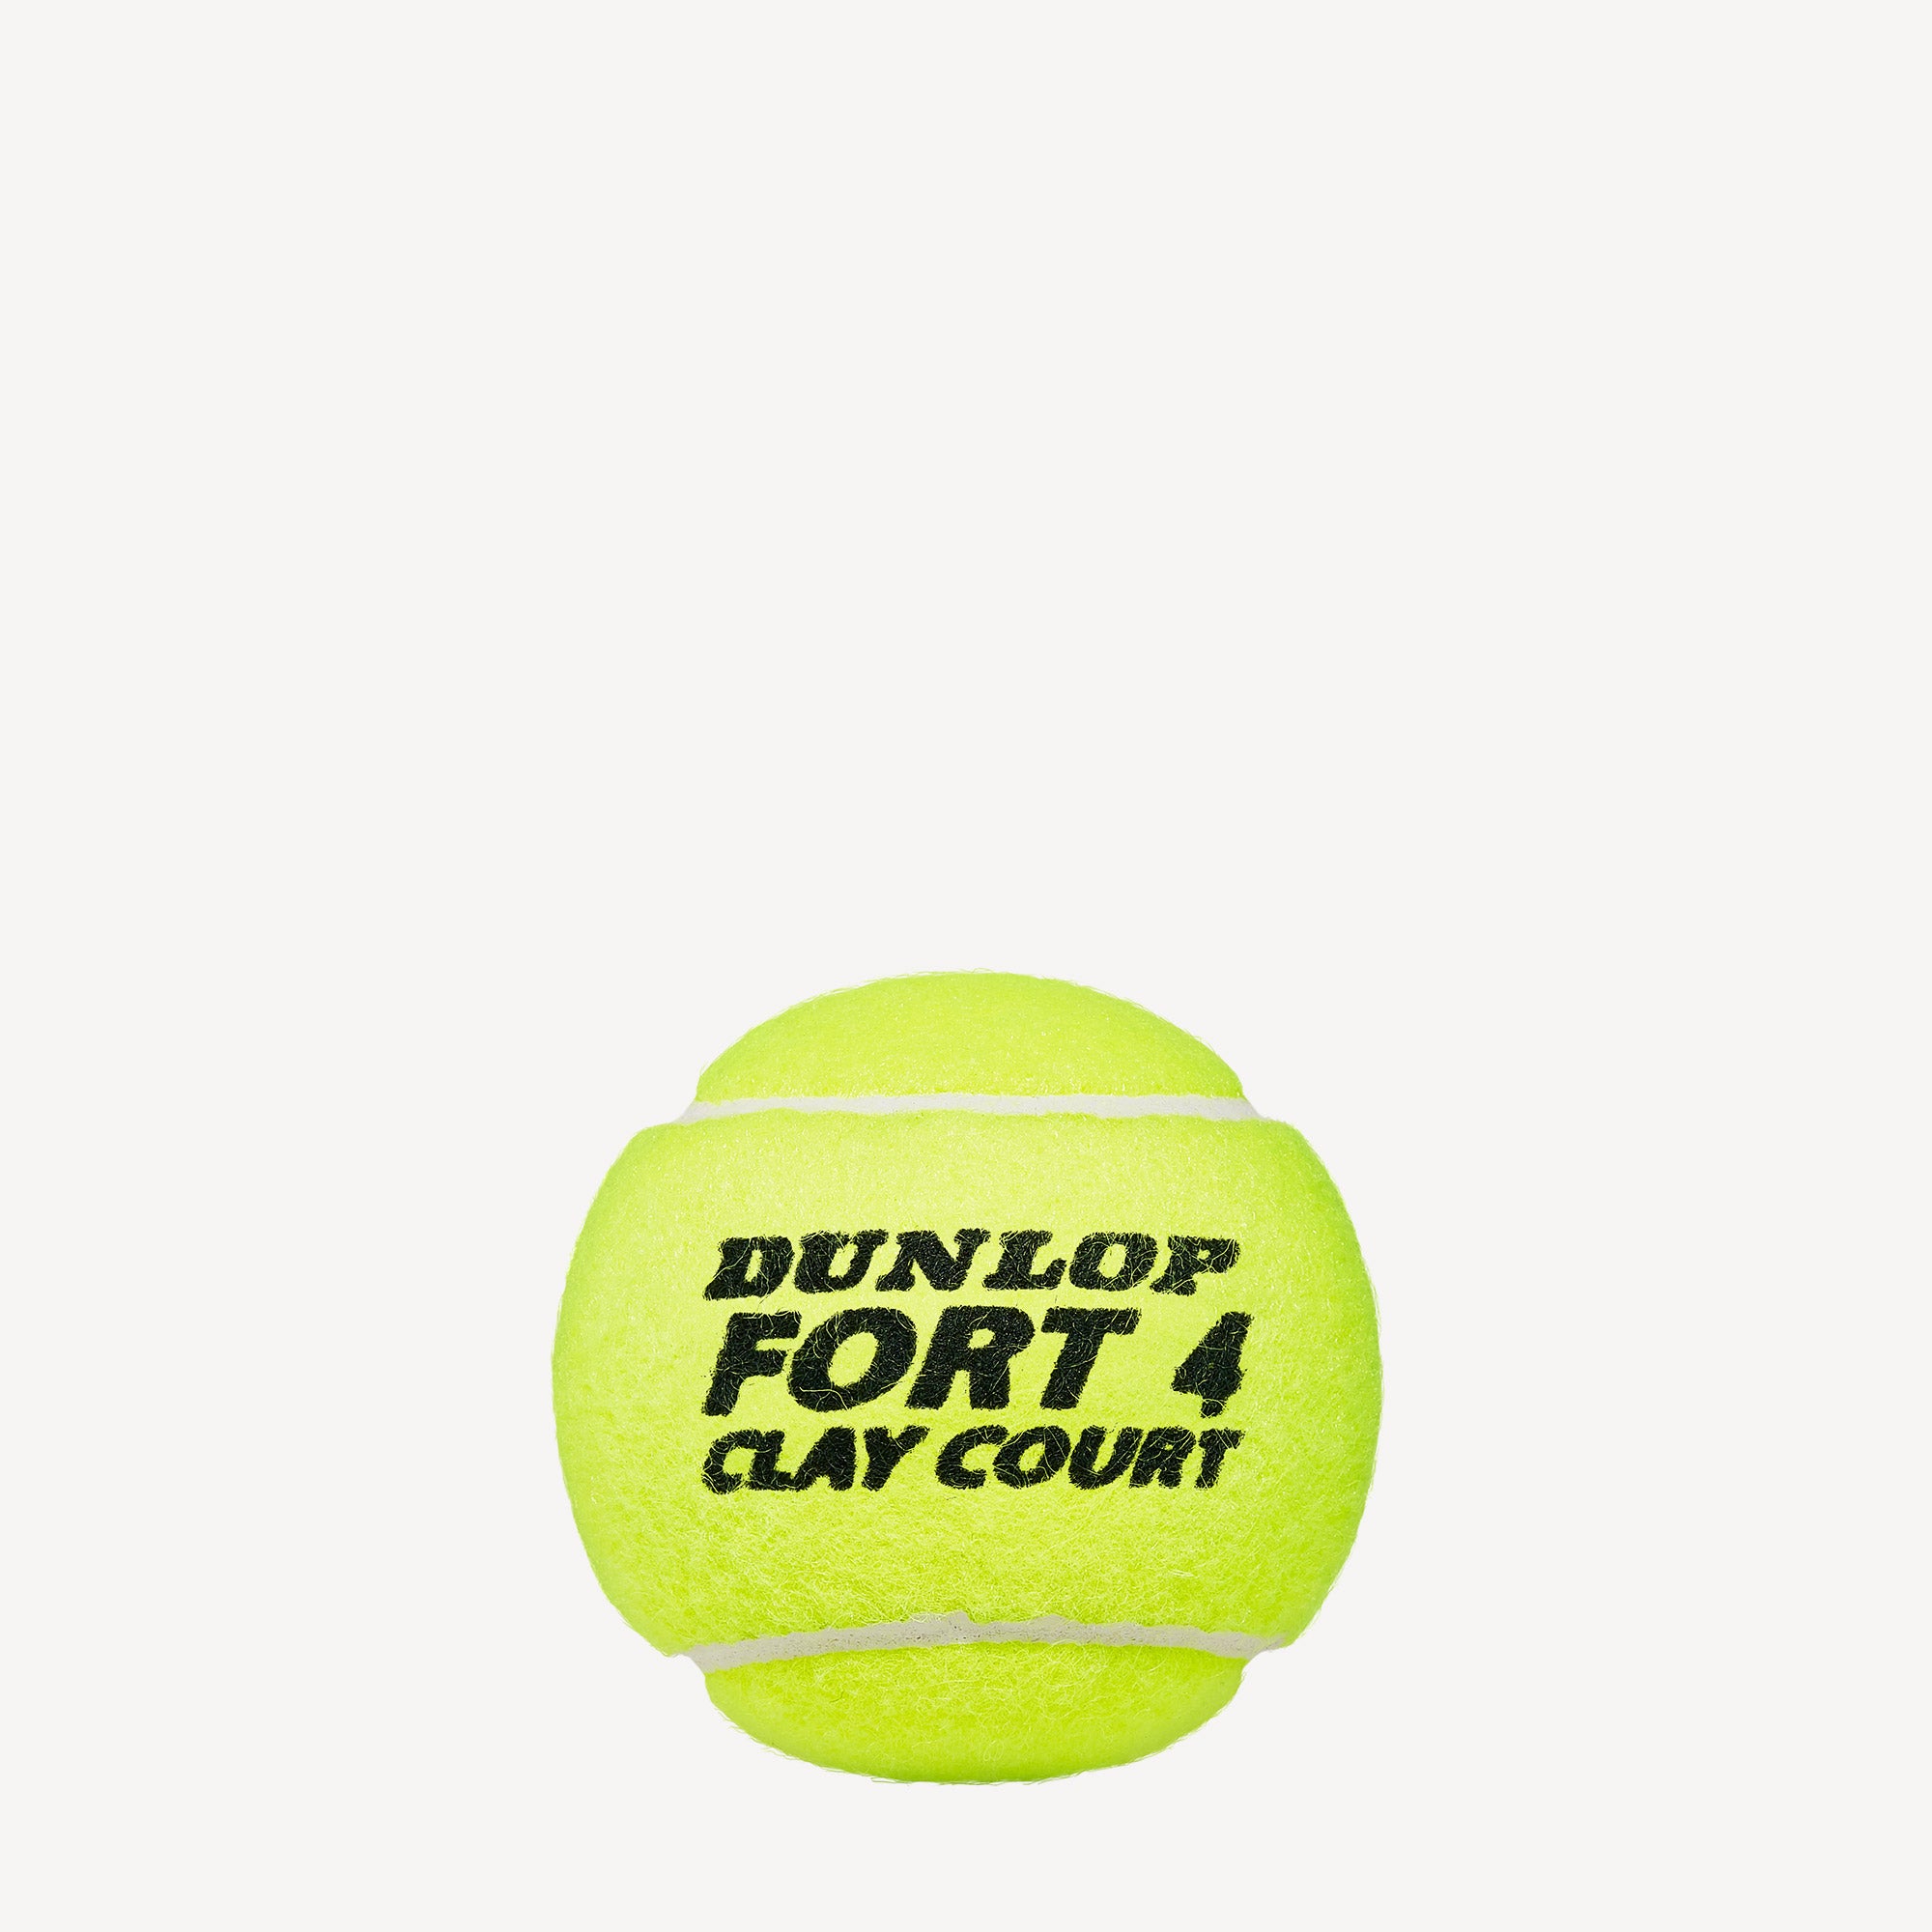 Dunlop Fort Clay Court 4 Tennis Balls 2